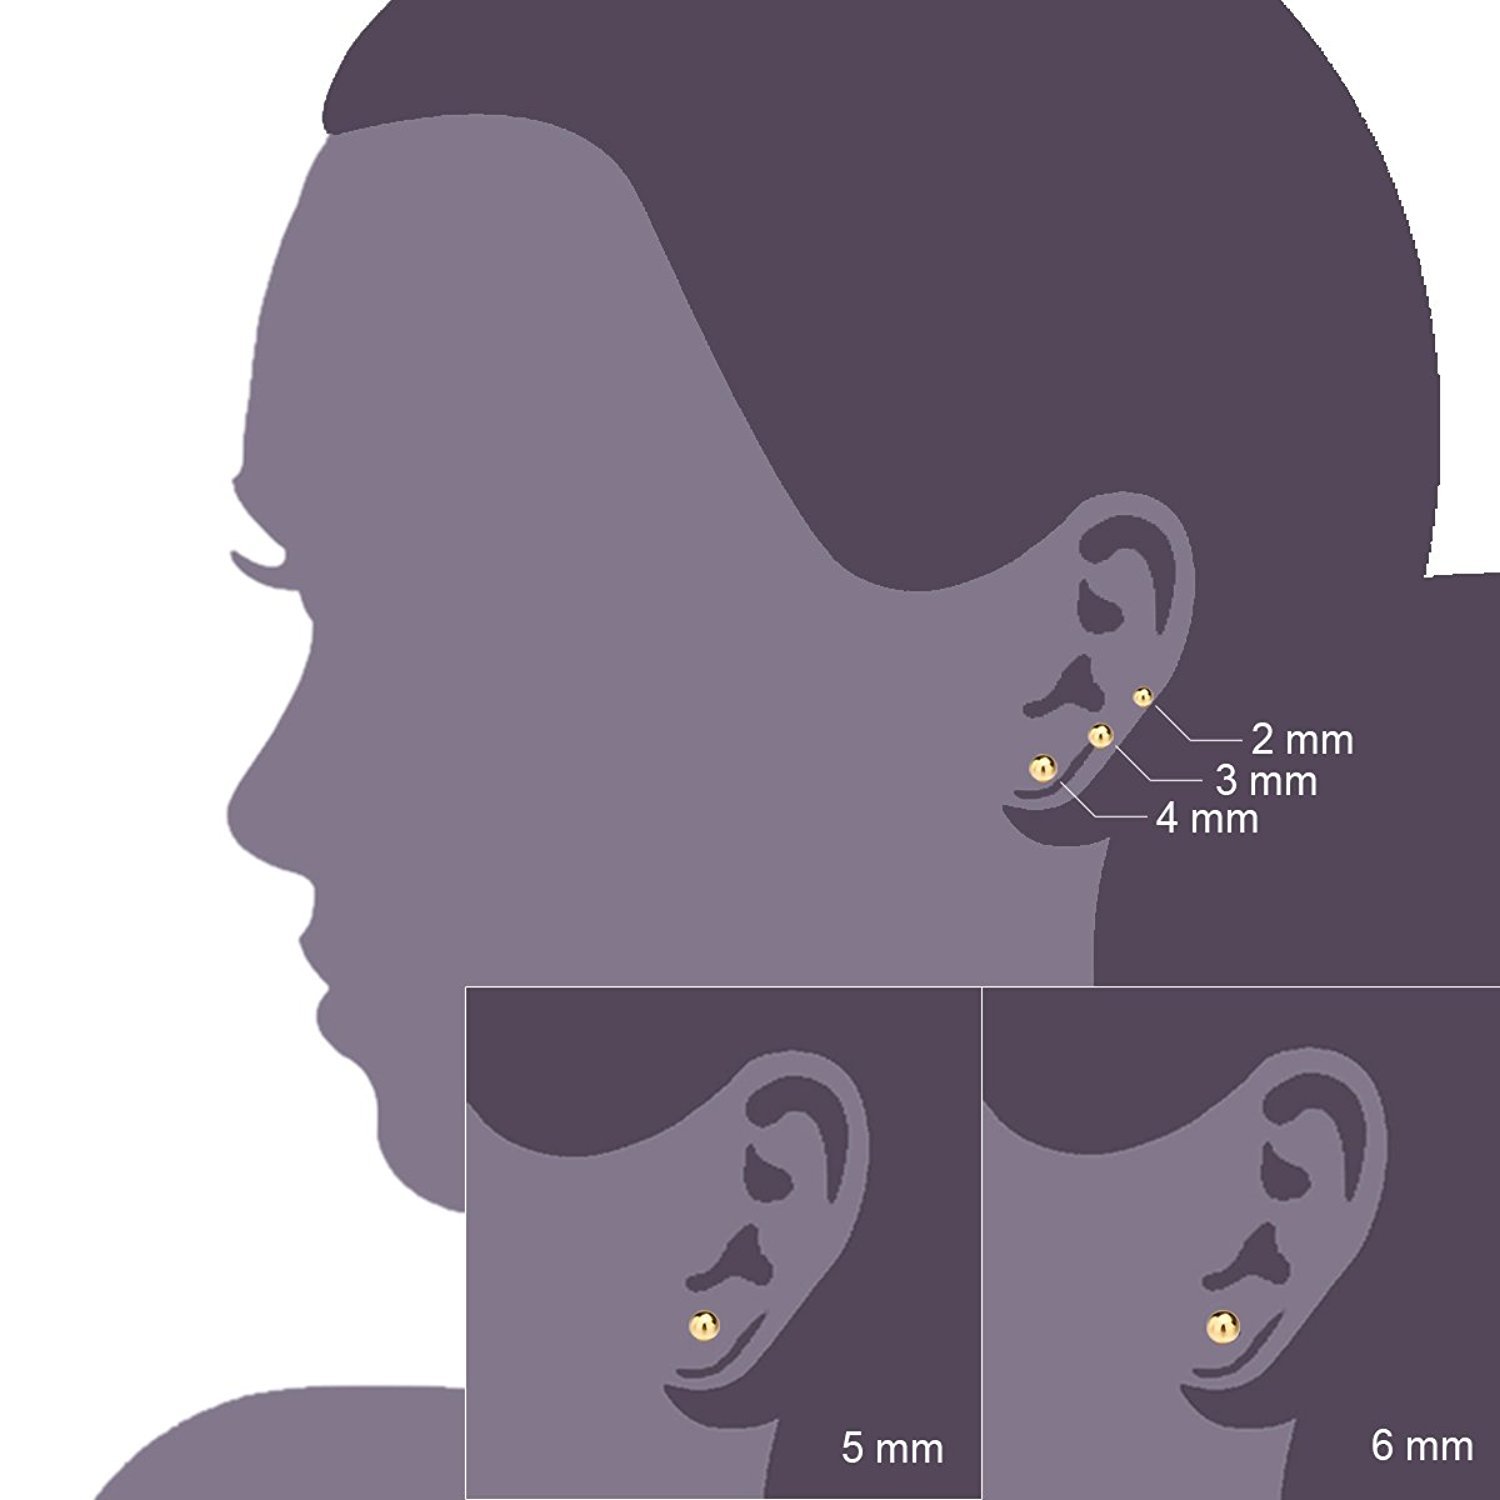 JEWELRIESHOP Ball Earrings 316L Surgical Steel Earrings Round Ball Stud Earrings Set for Women Girls